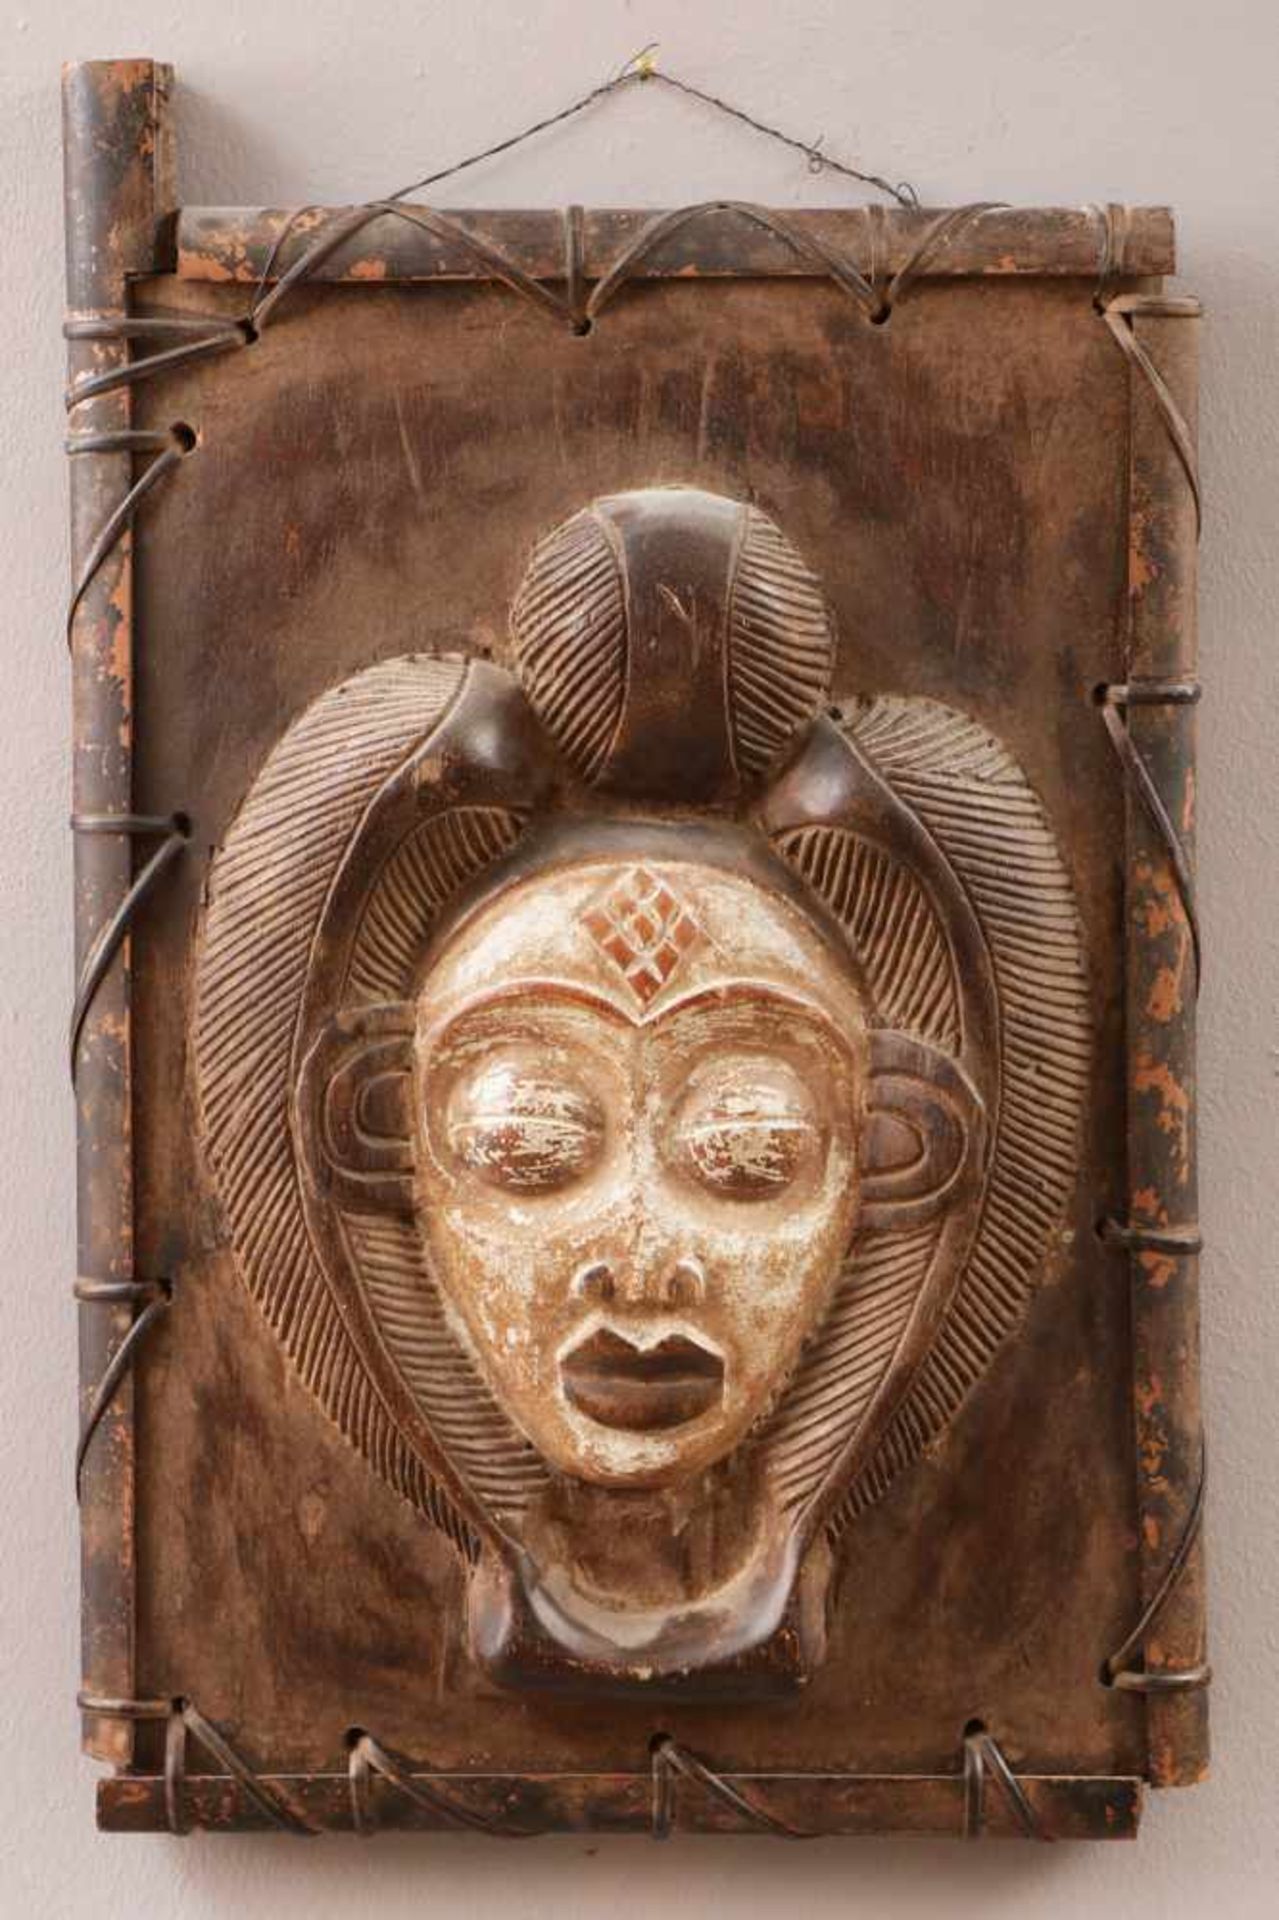 Afrikanisches Fenster/Fensterladen wohl Makonde, Holz, geschnitzt, mit Maskendekor, umflochten, hell